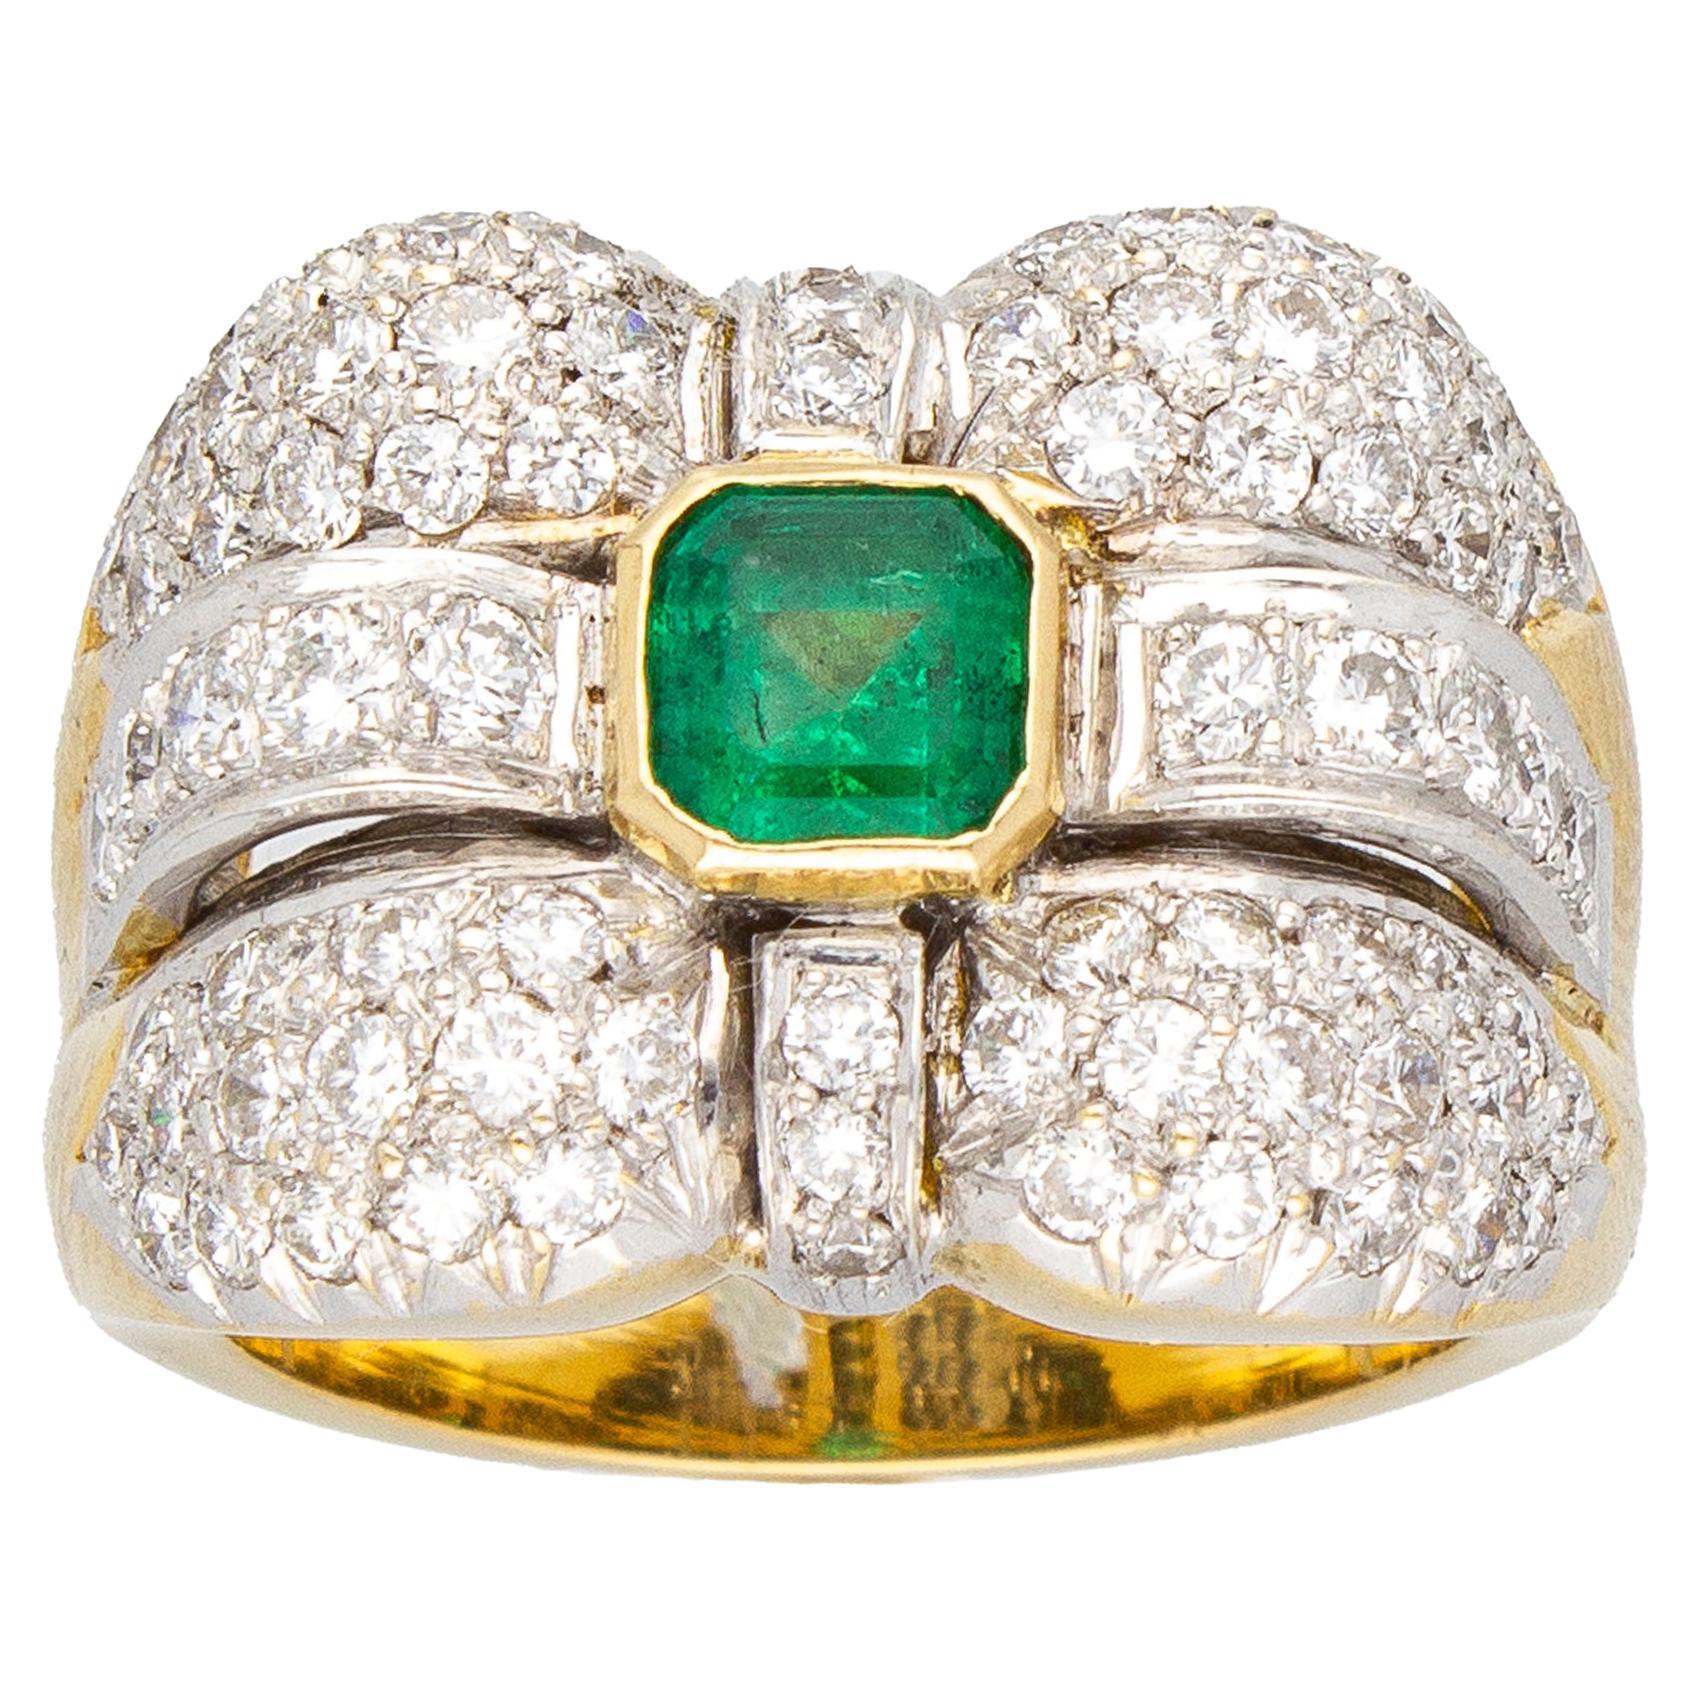 Smaragd 0,70 ct, Diamanten 1,60 ct. Zeitgenössischer Bandring.18 Kt Gold. Made in Italy